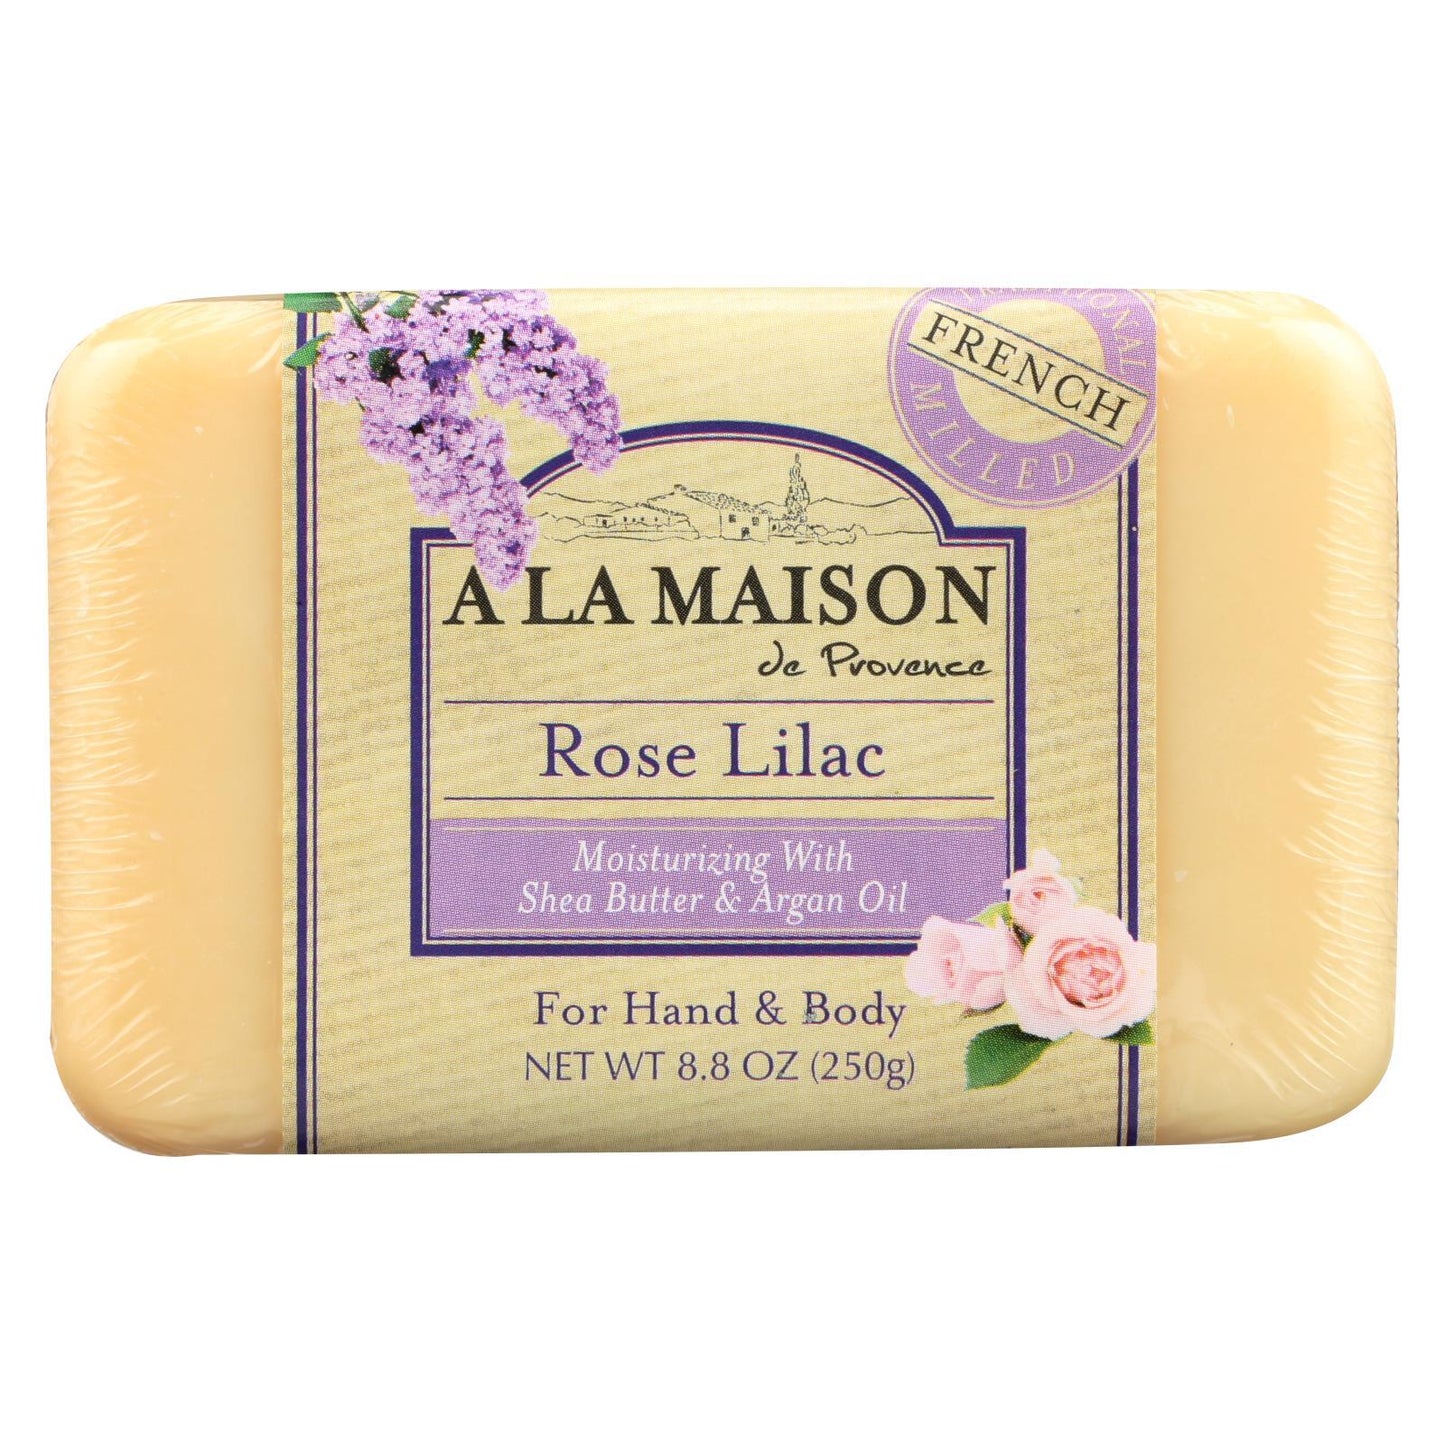 A La Maison Rose Lilac Bar Soap 250g